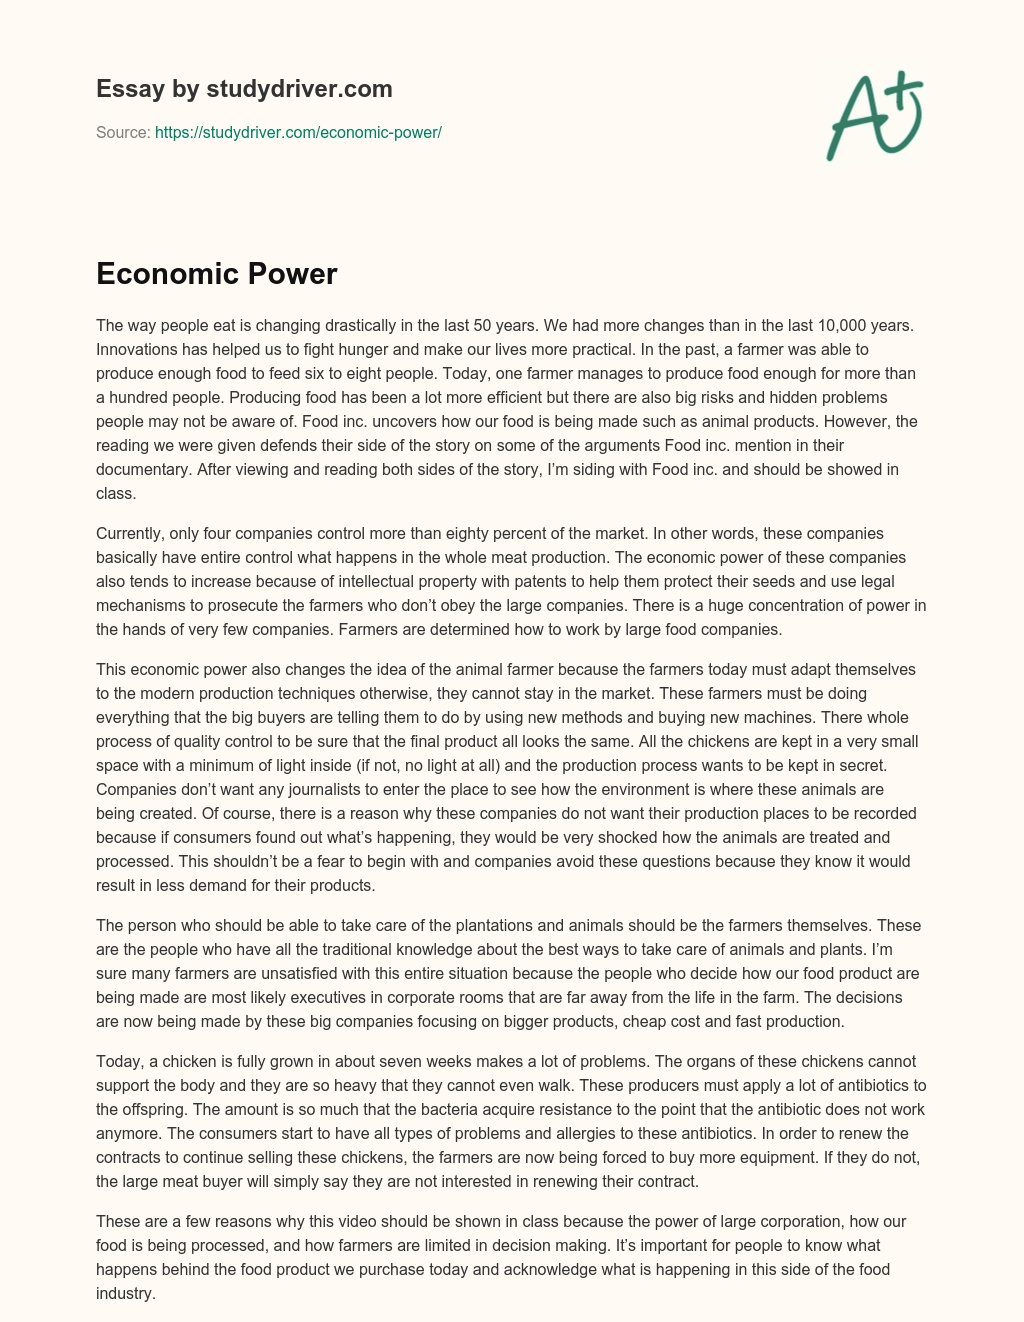 Economic Power essay